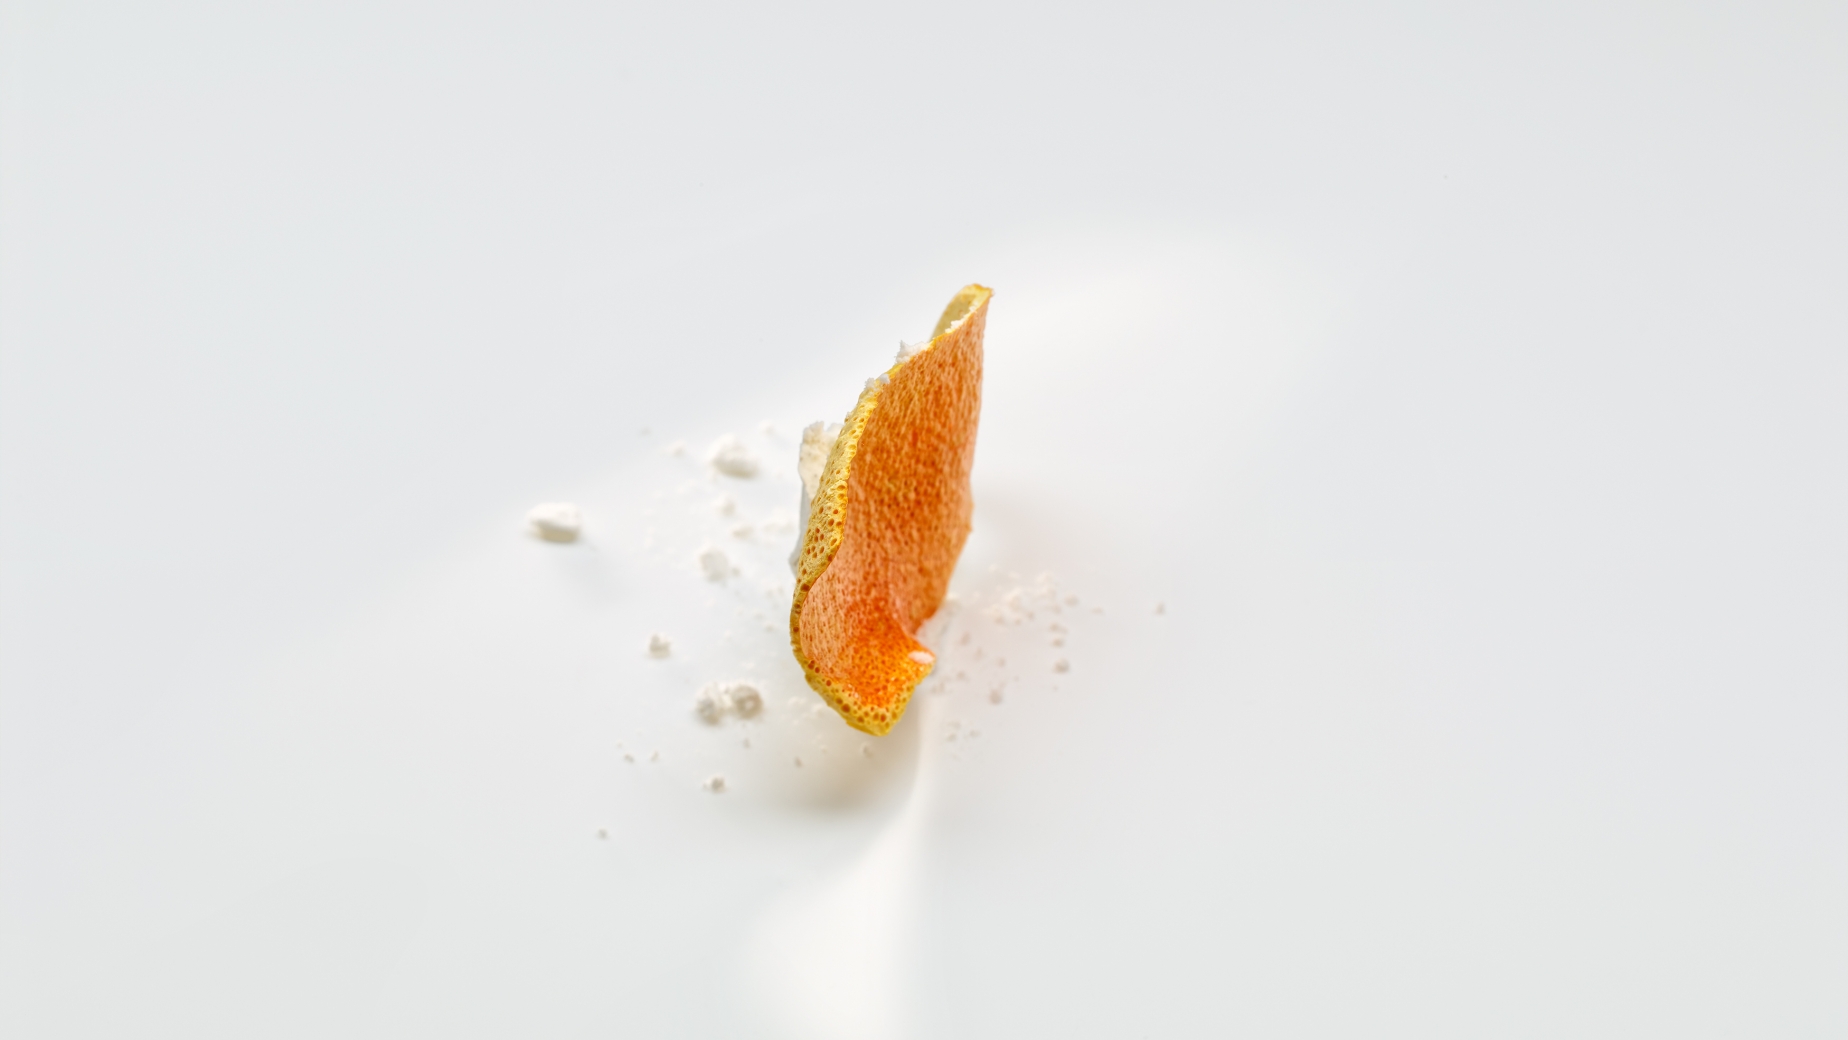 Chip salado de naranja y pato.
FOTO: José Luis López de Zubiría/ Mugaritz